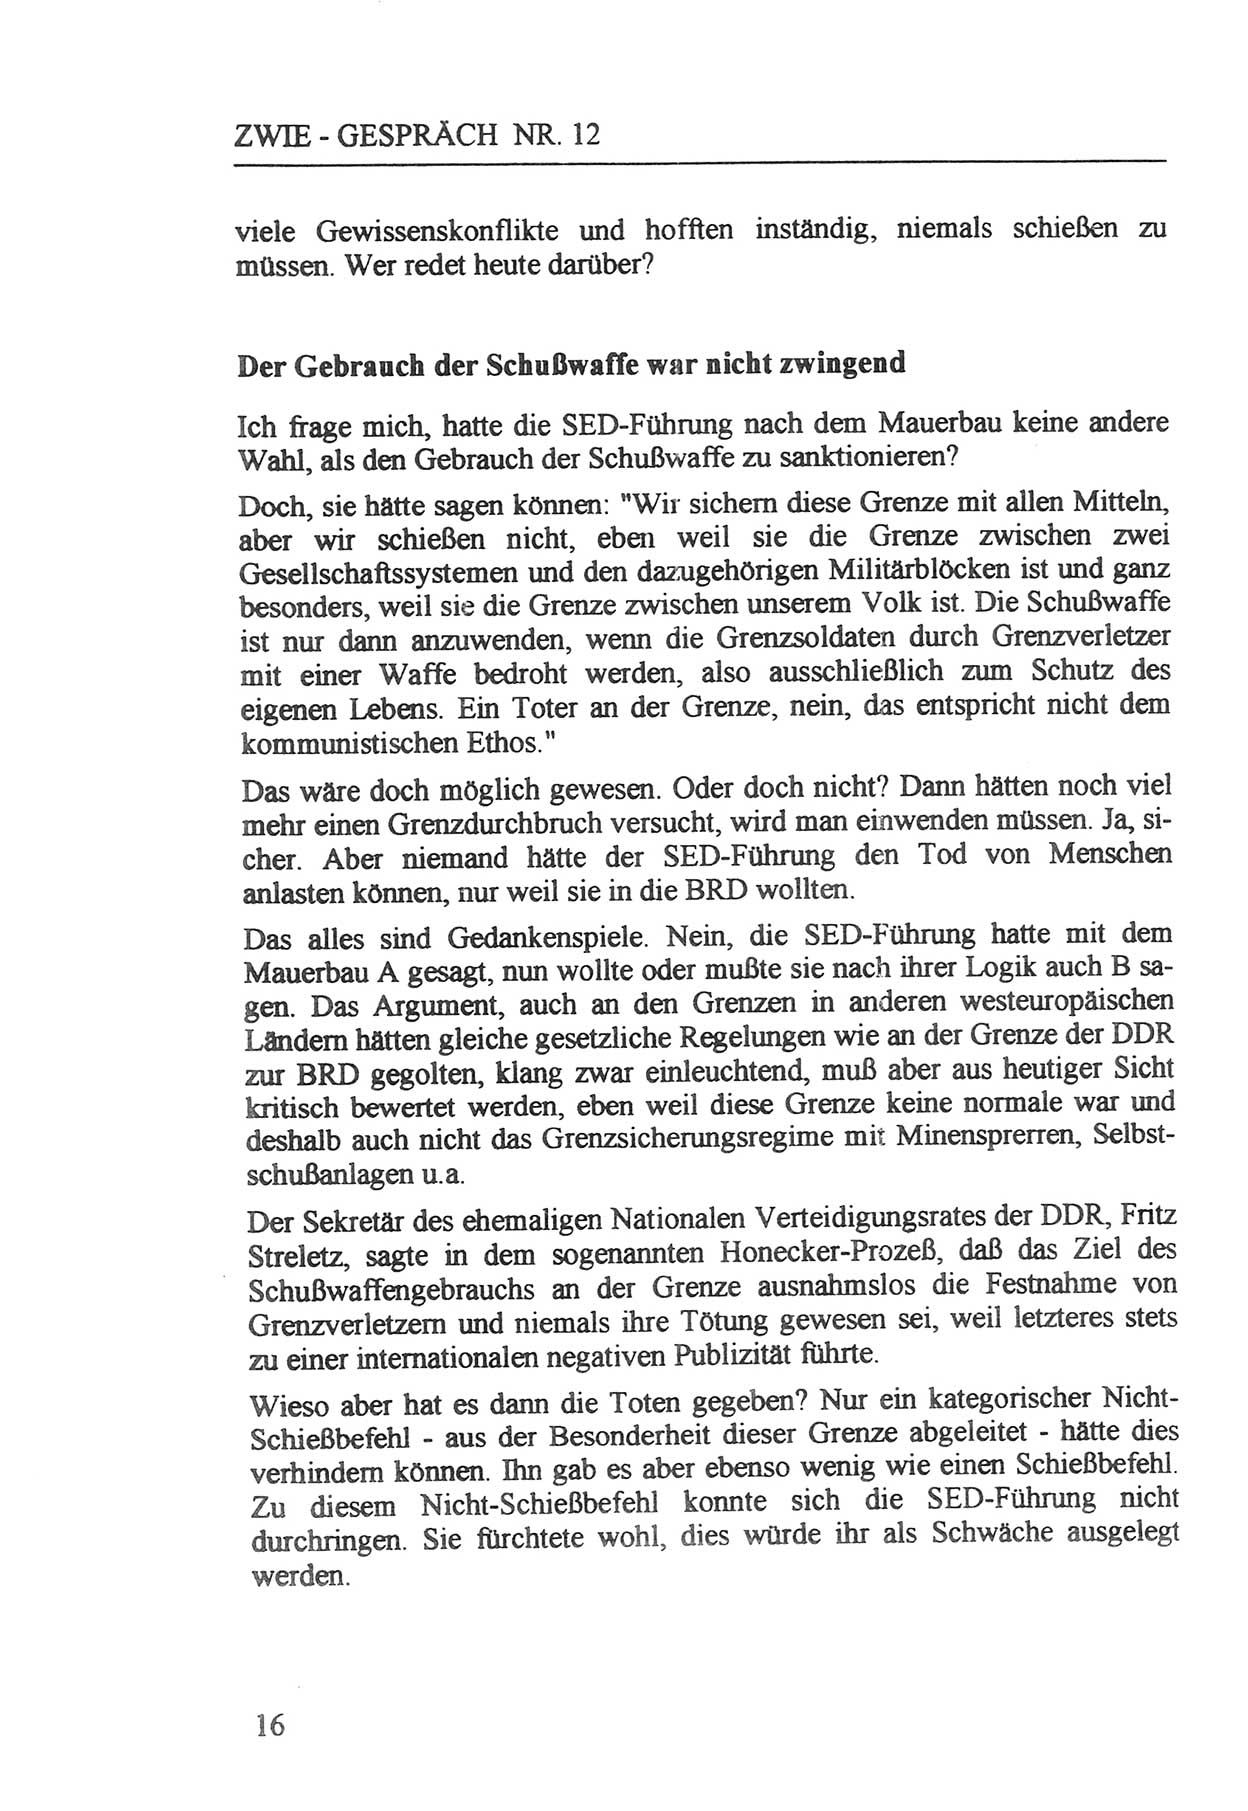 Zwie-Gespräch, Beiträge zur Aufarbeitung der Staatssicherheits-Vergangenheit [Deutsche Demokratische Republik (DDR)], Ausgabe Nr. 12, Berlin 1993, Seite 16 (Zwie-Gespr. Ausg. 12 1993, S. 16)